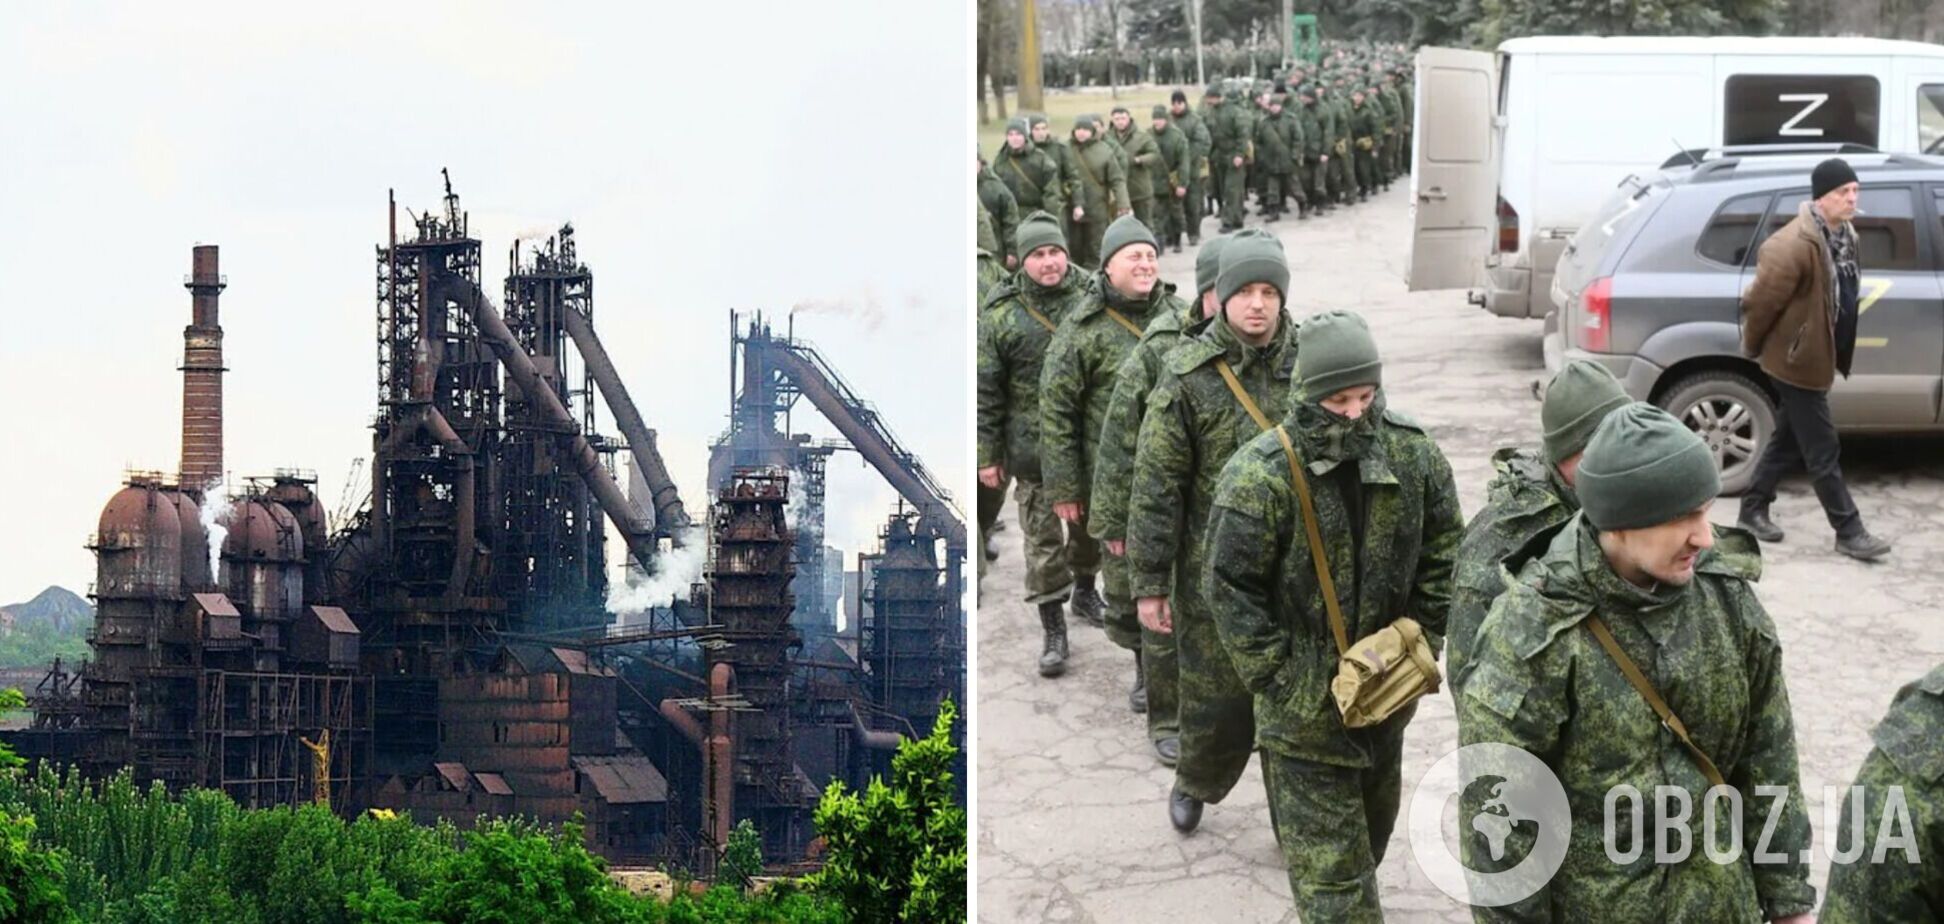 Енакиевский металлургический завод прекращает работу из-за 'мобилизации' работников – разведка